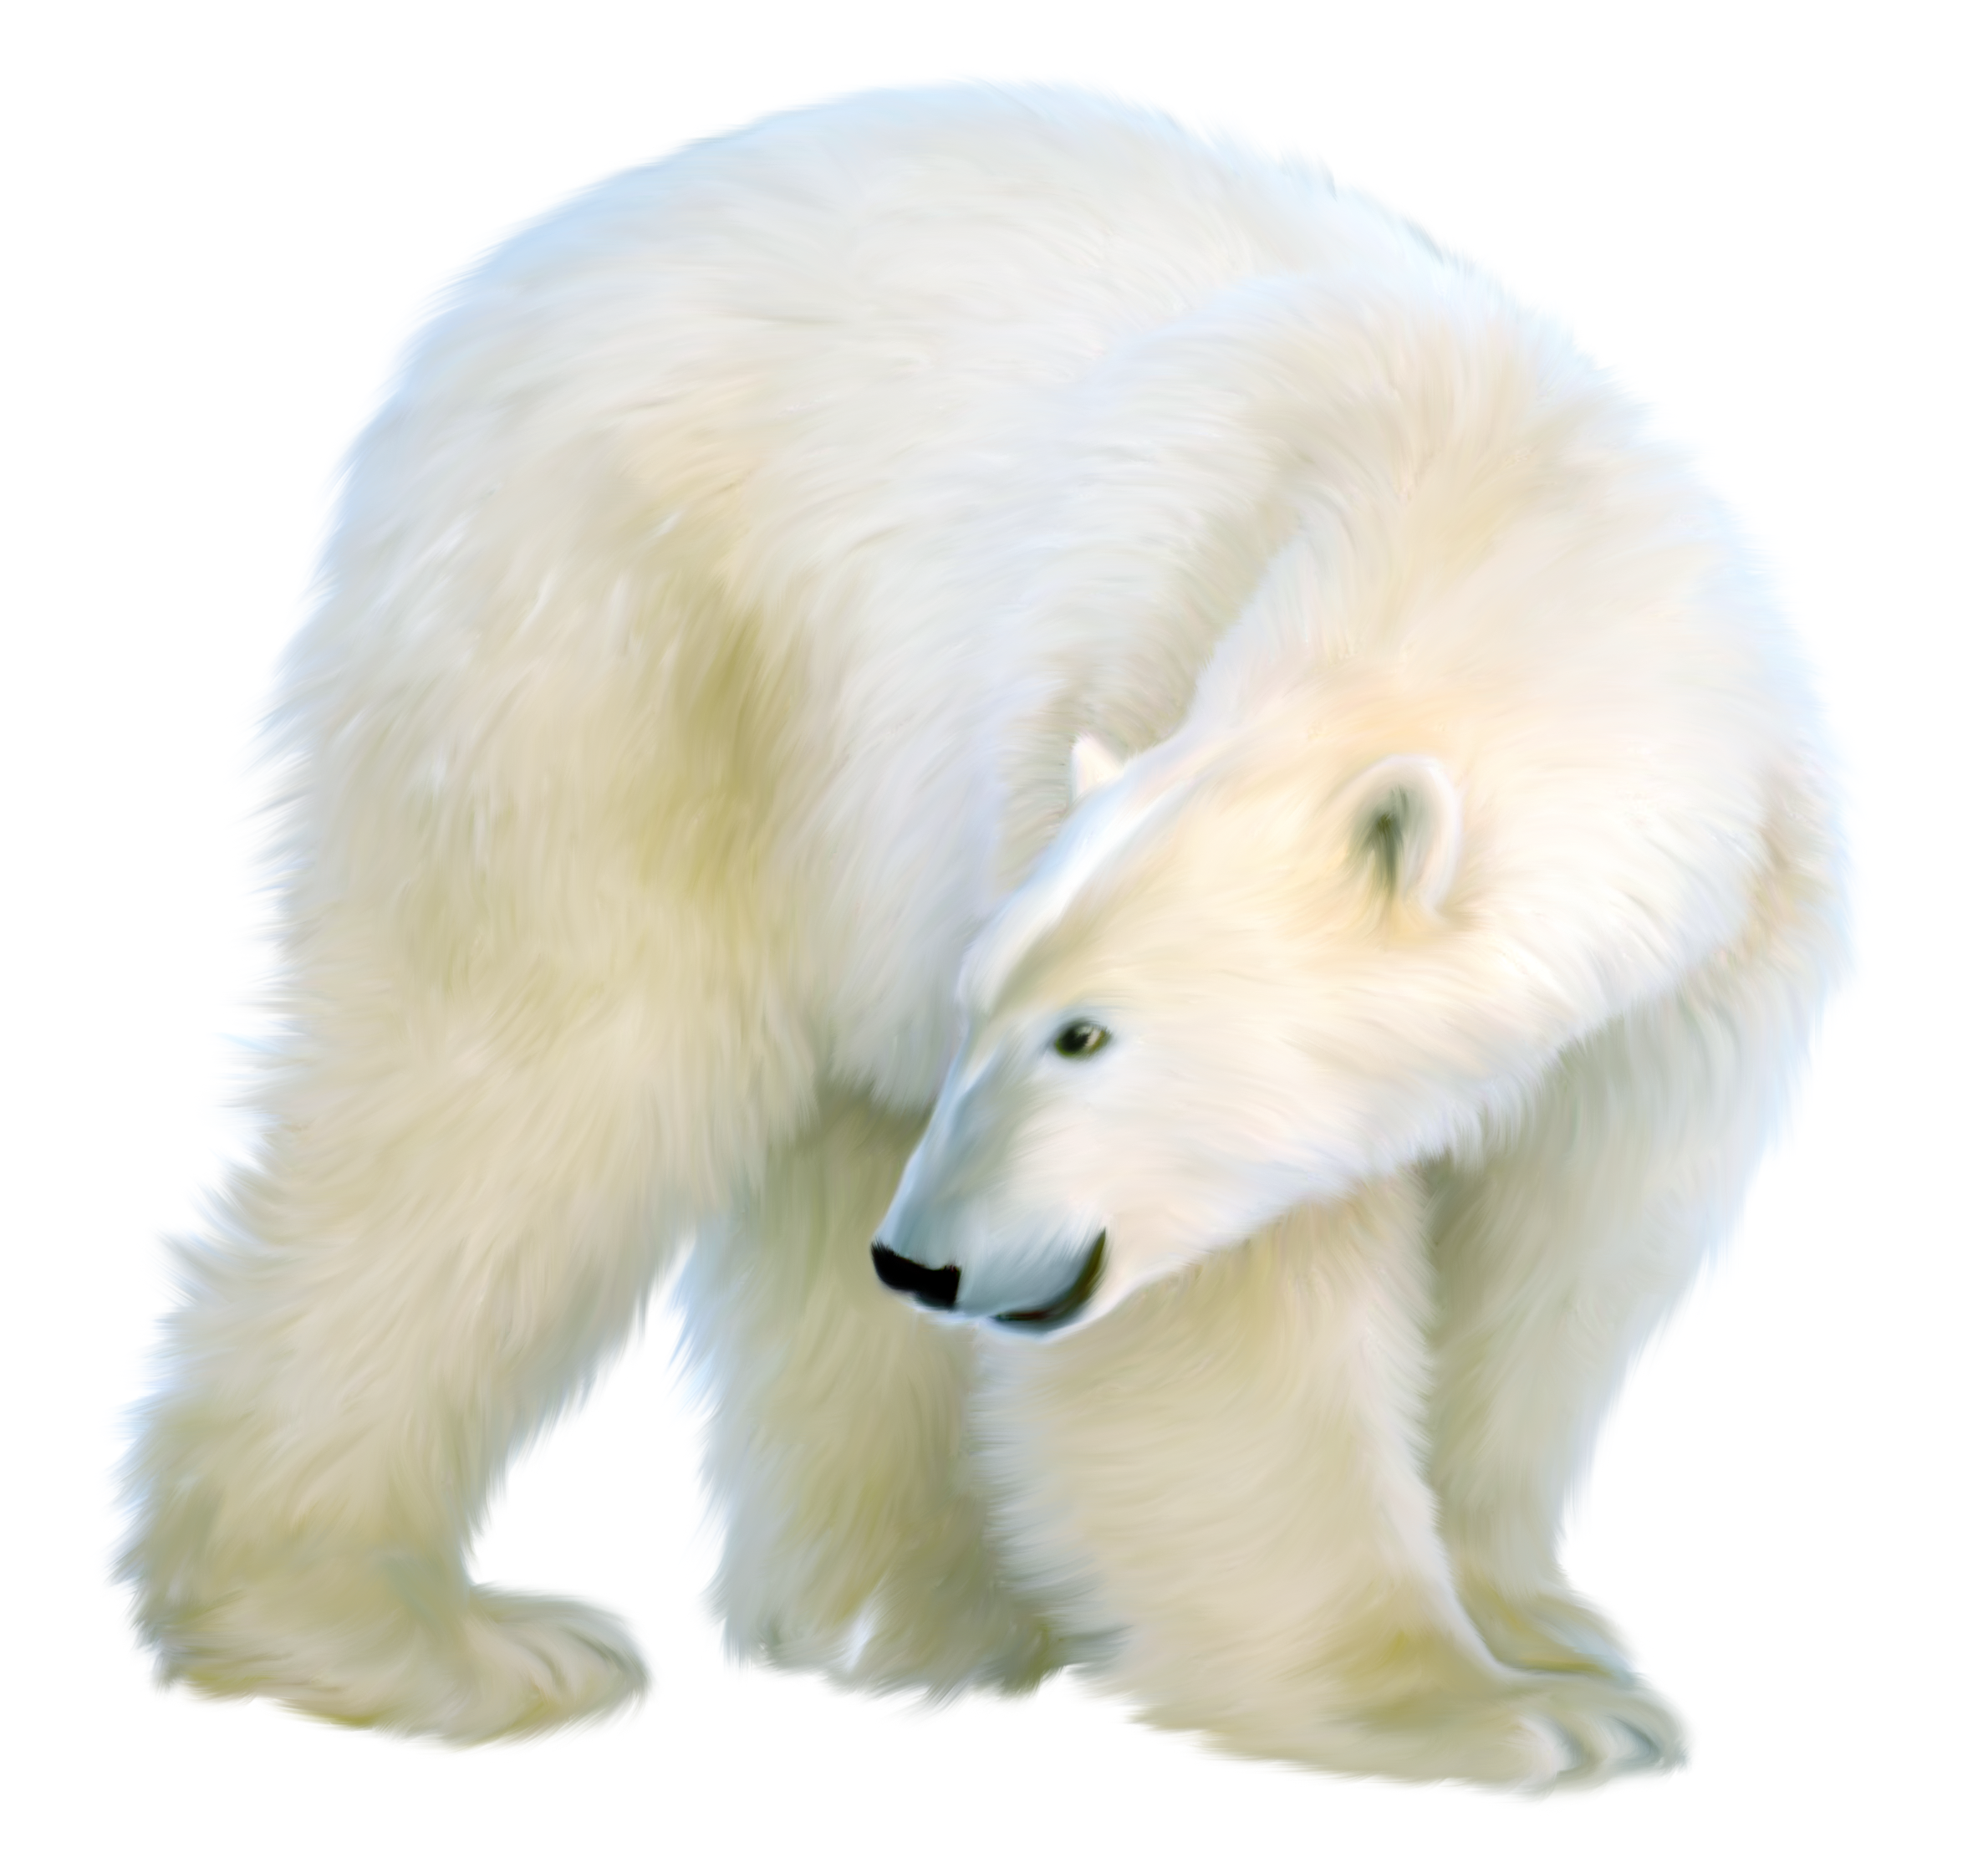 Born png. Белый медведь. Белый медведь на прозрачном фоне. Медведь на прозрачном фоне. Белый медведь на белом фоне.